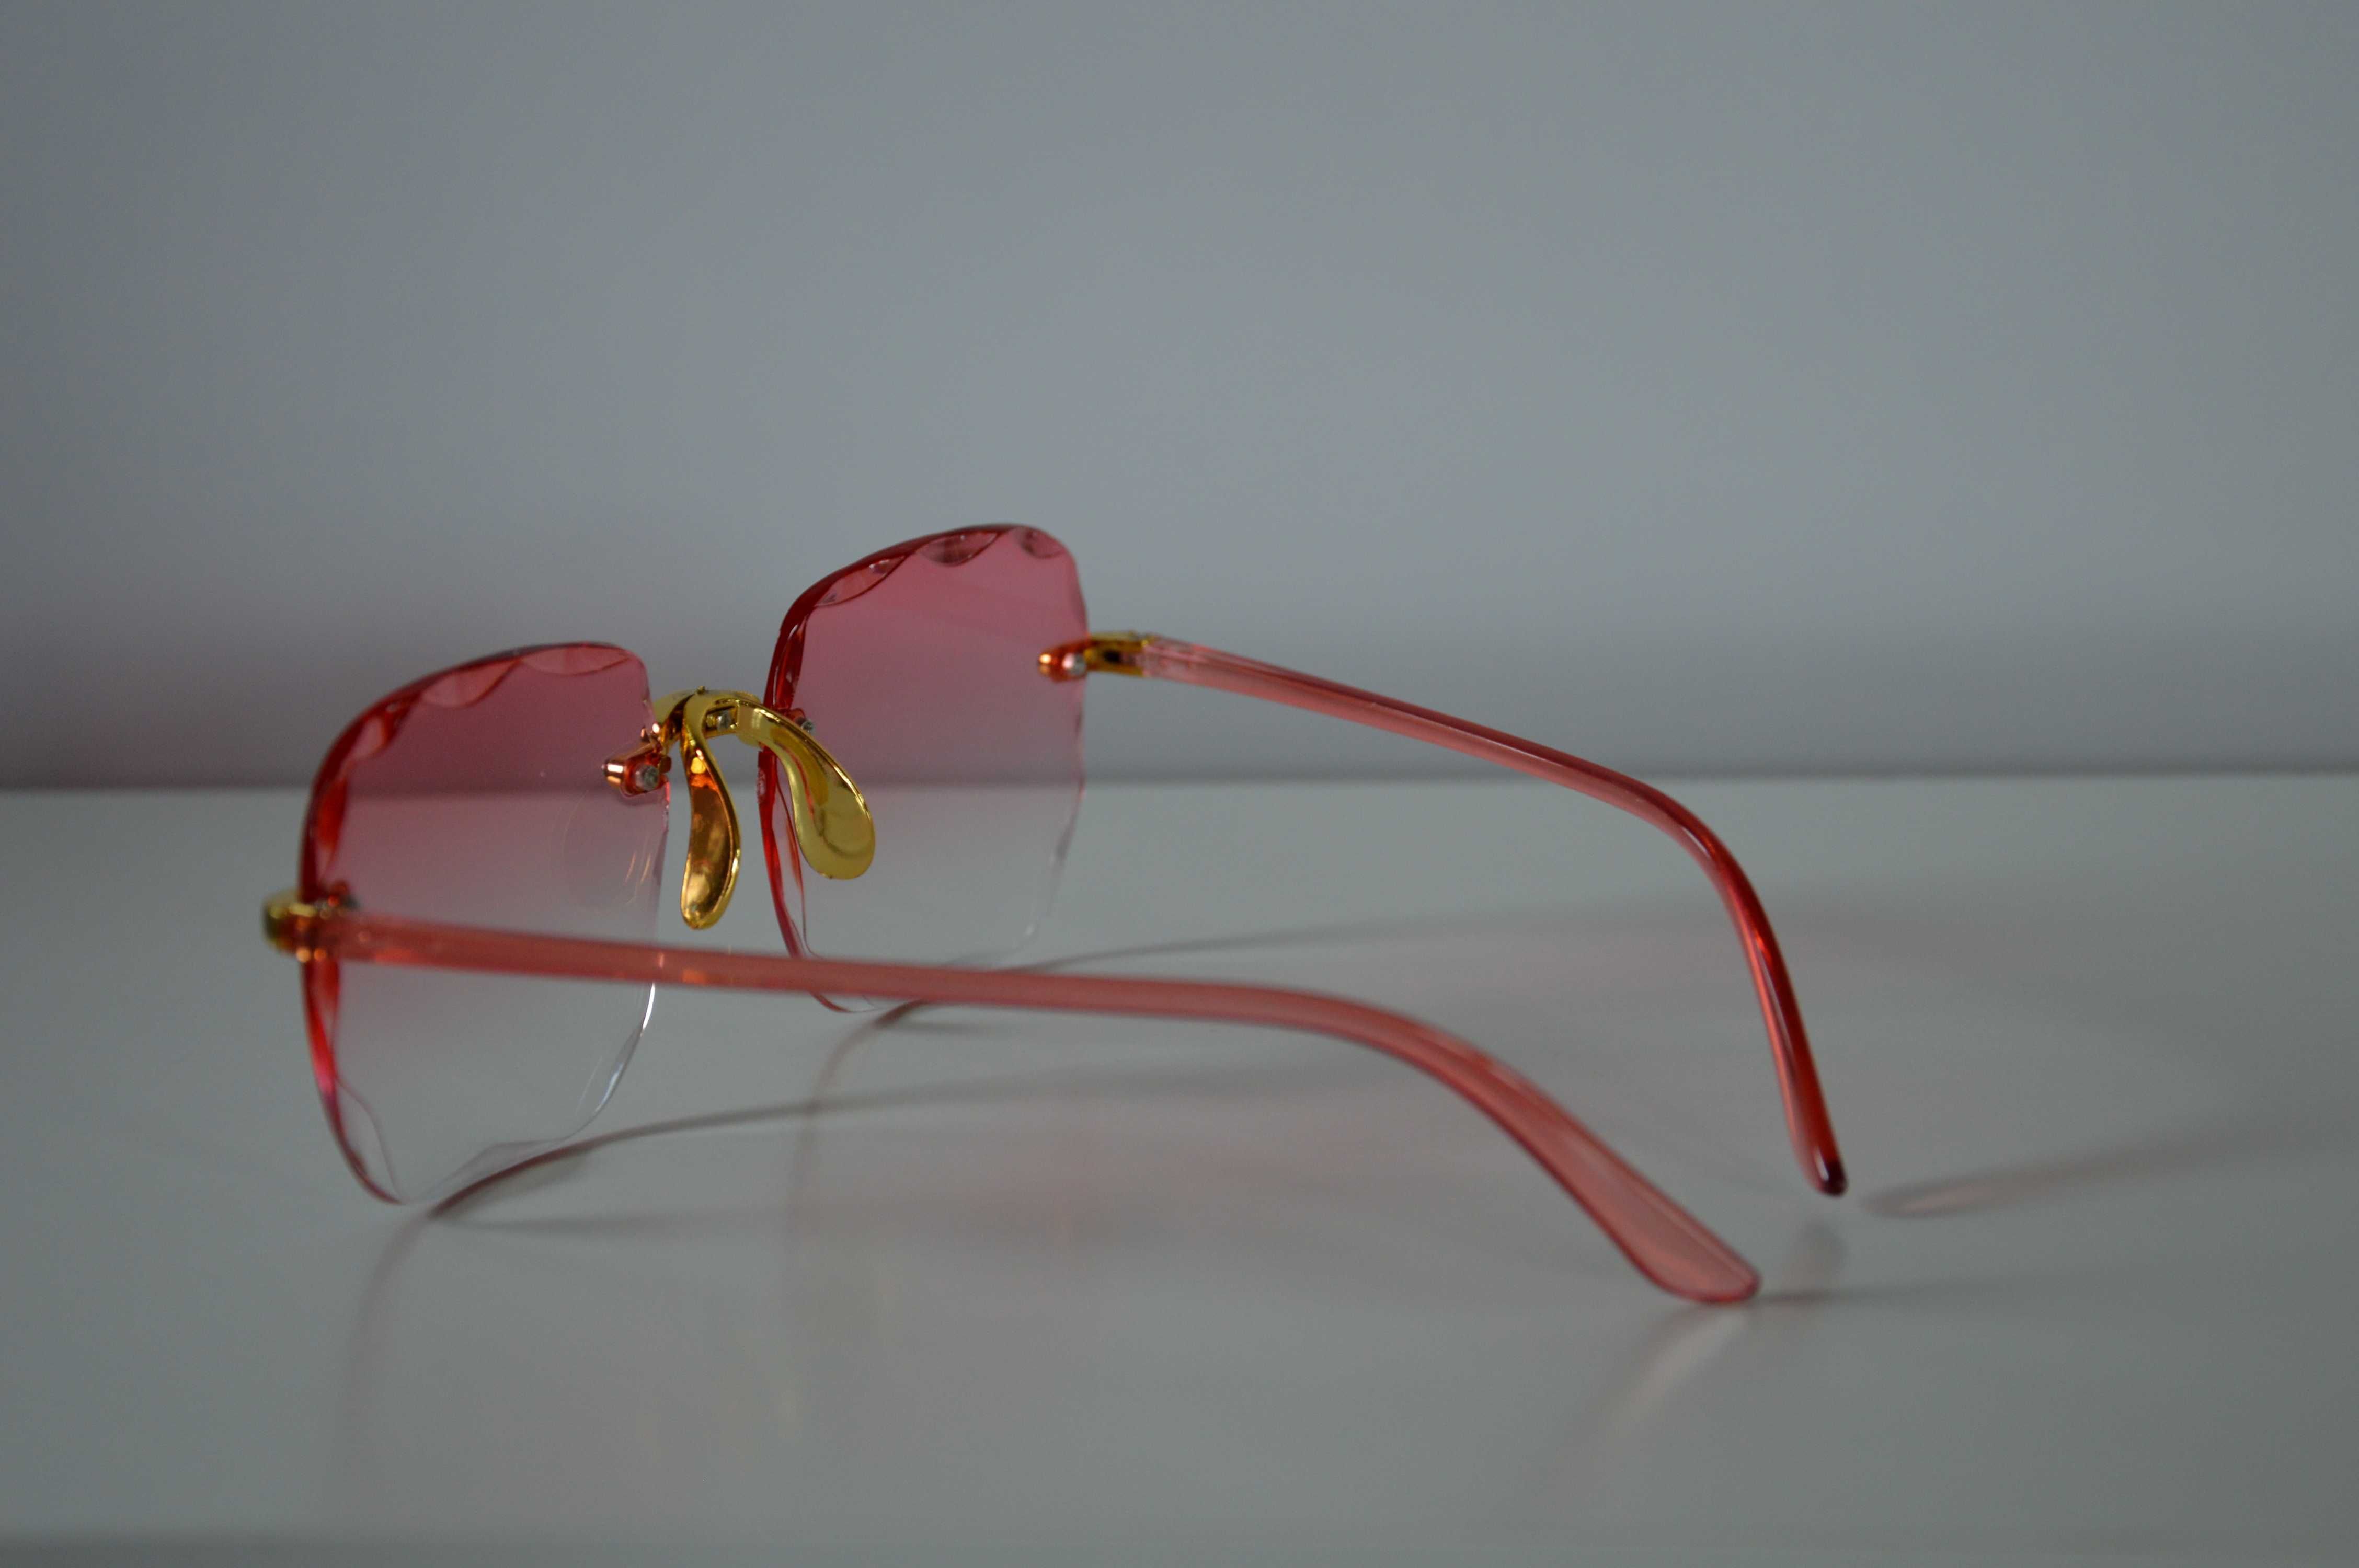 Diamentowe okulary przeciwsłoneczne damskie bezramkowe pink kwadratowe